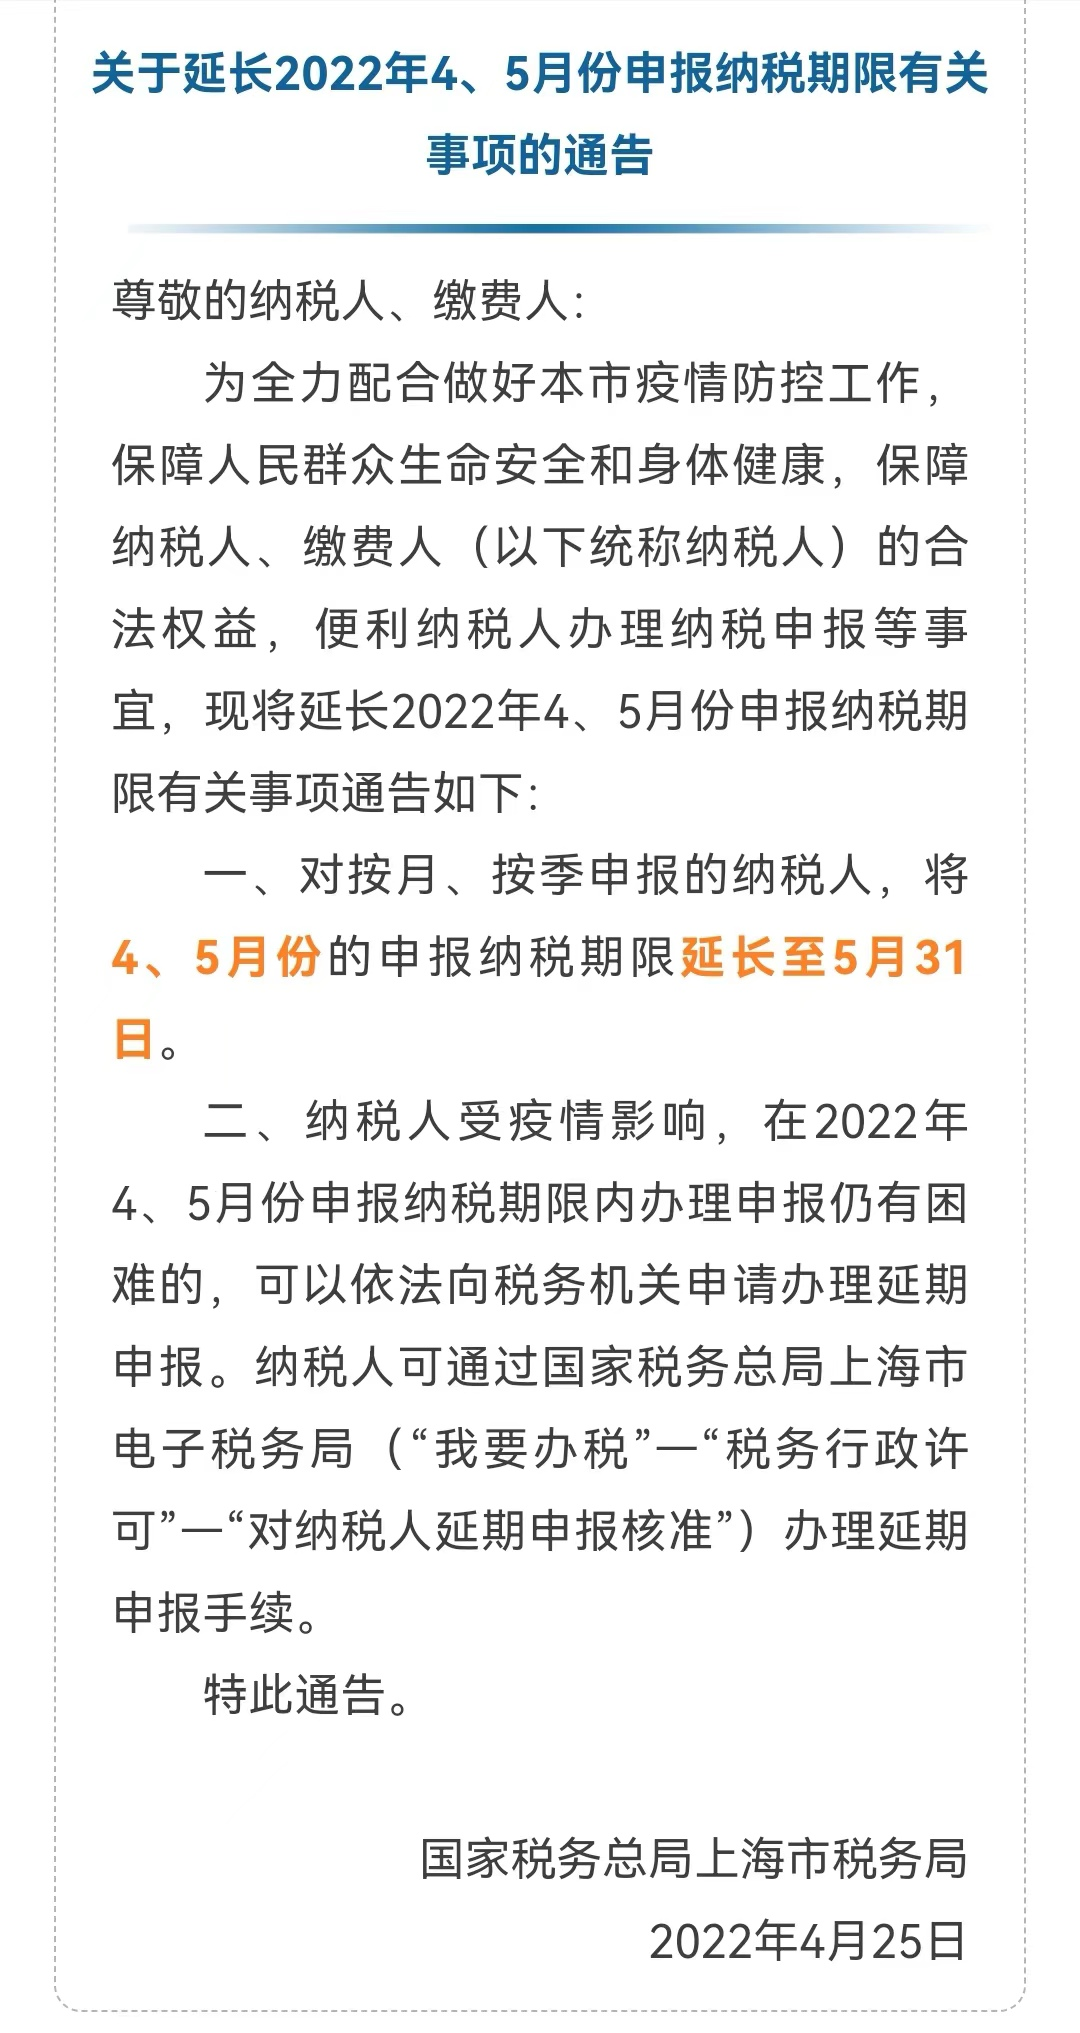 上海税务局：2022年4、5月份的申报纳税期限延长至5月31日